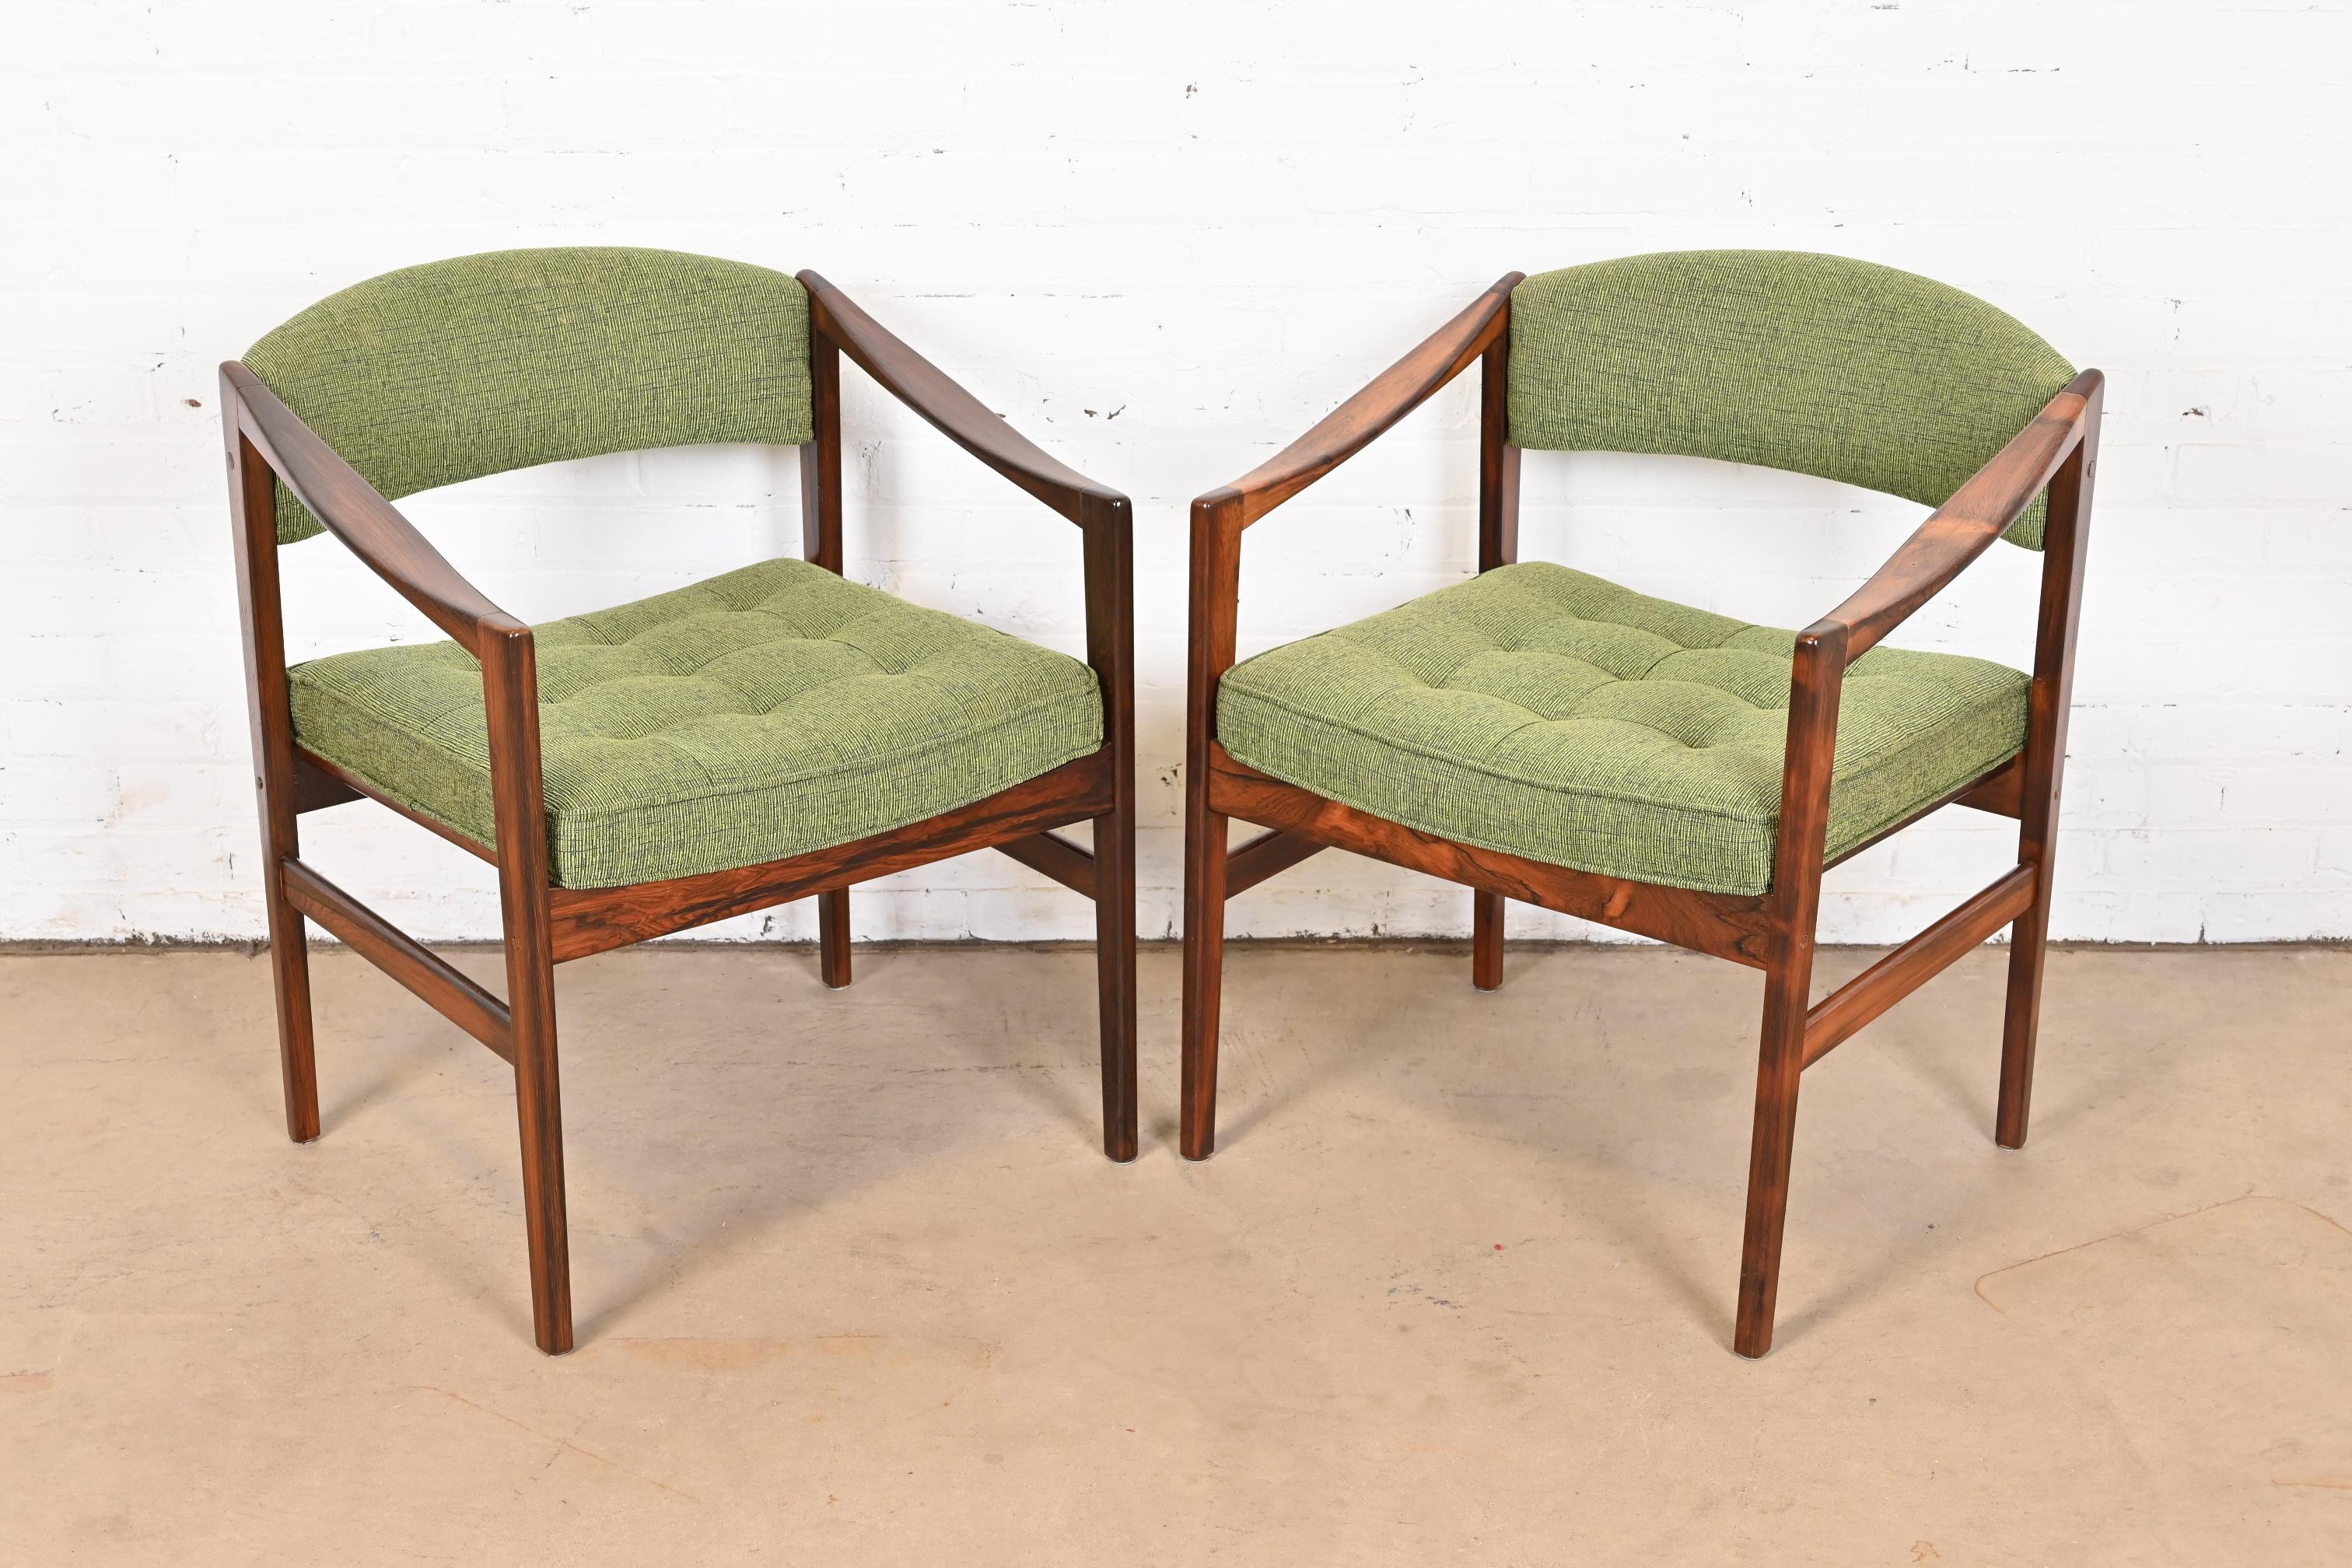 Une paire exceptionnelle de fauteuils modernes suédois, de fauteuils club ou de fauteuils de salon.

Par Ray Zimmerman pour DUX

Suède, années 1960

Superbes piétements en palissandre brésilien sculpté, avec garniture Knoll verte sur les